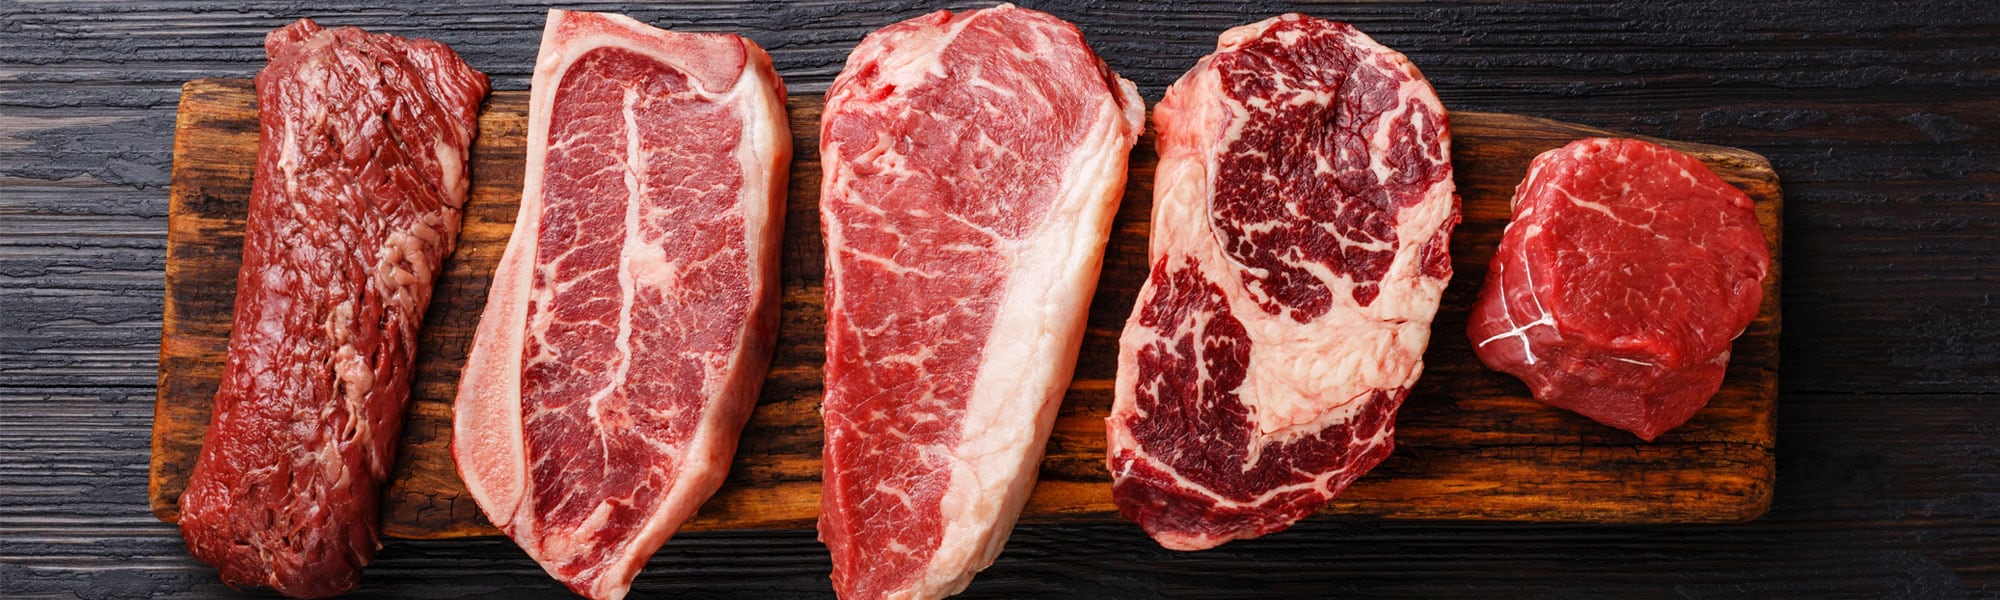 Steaks-on-cutting-board